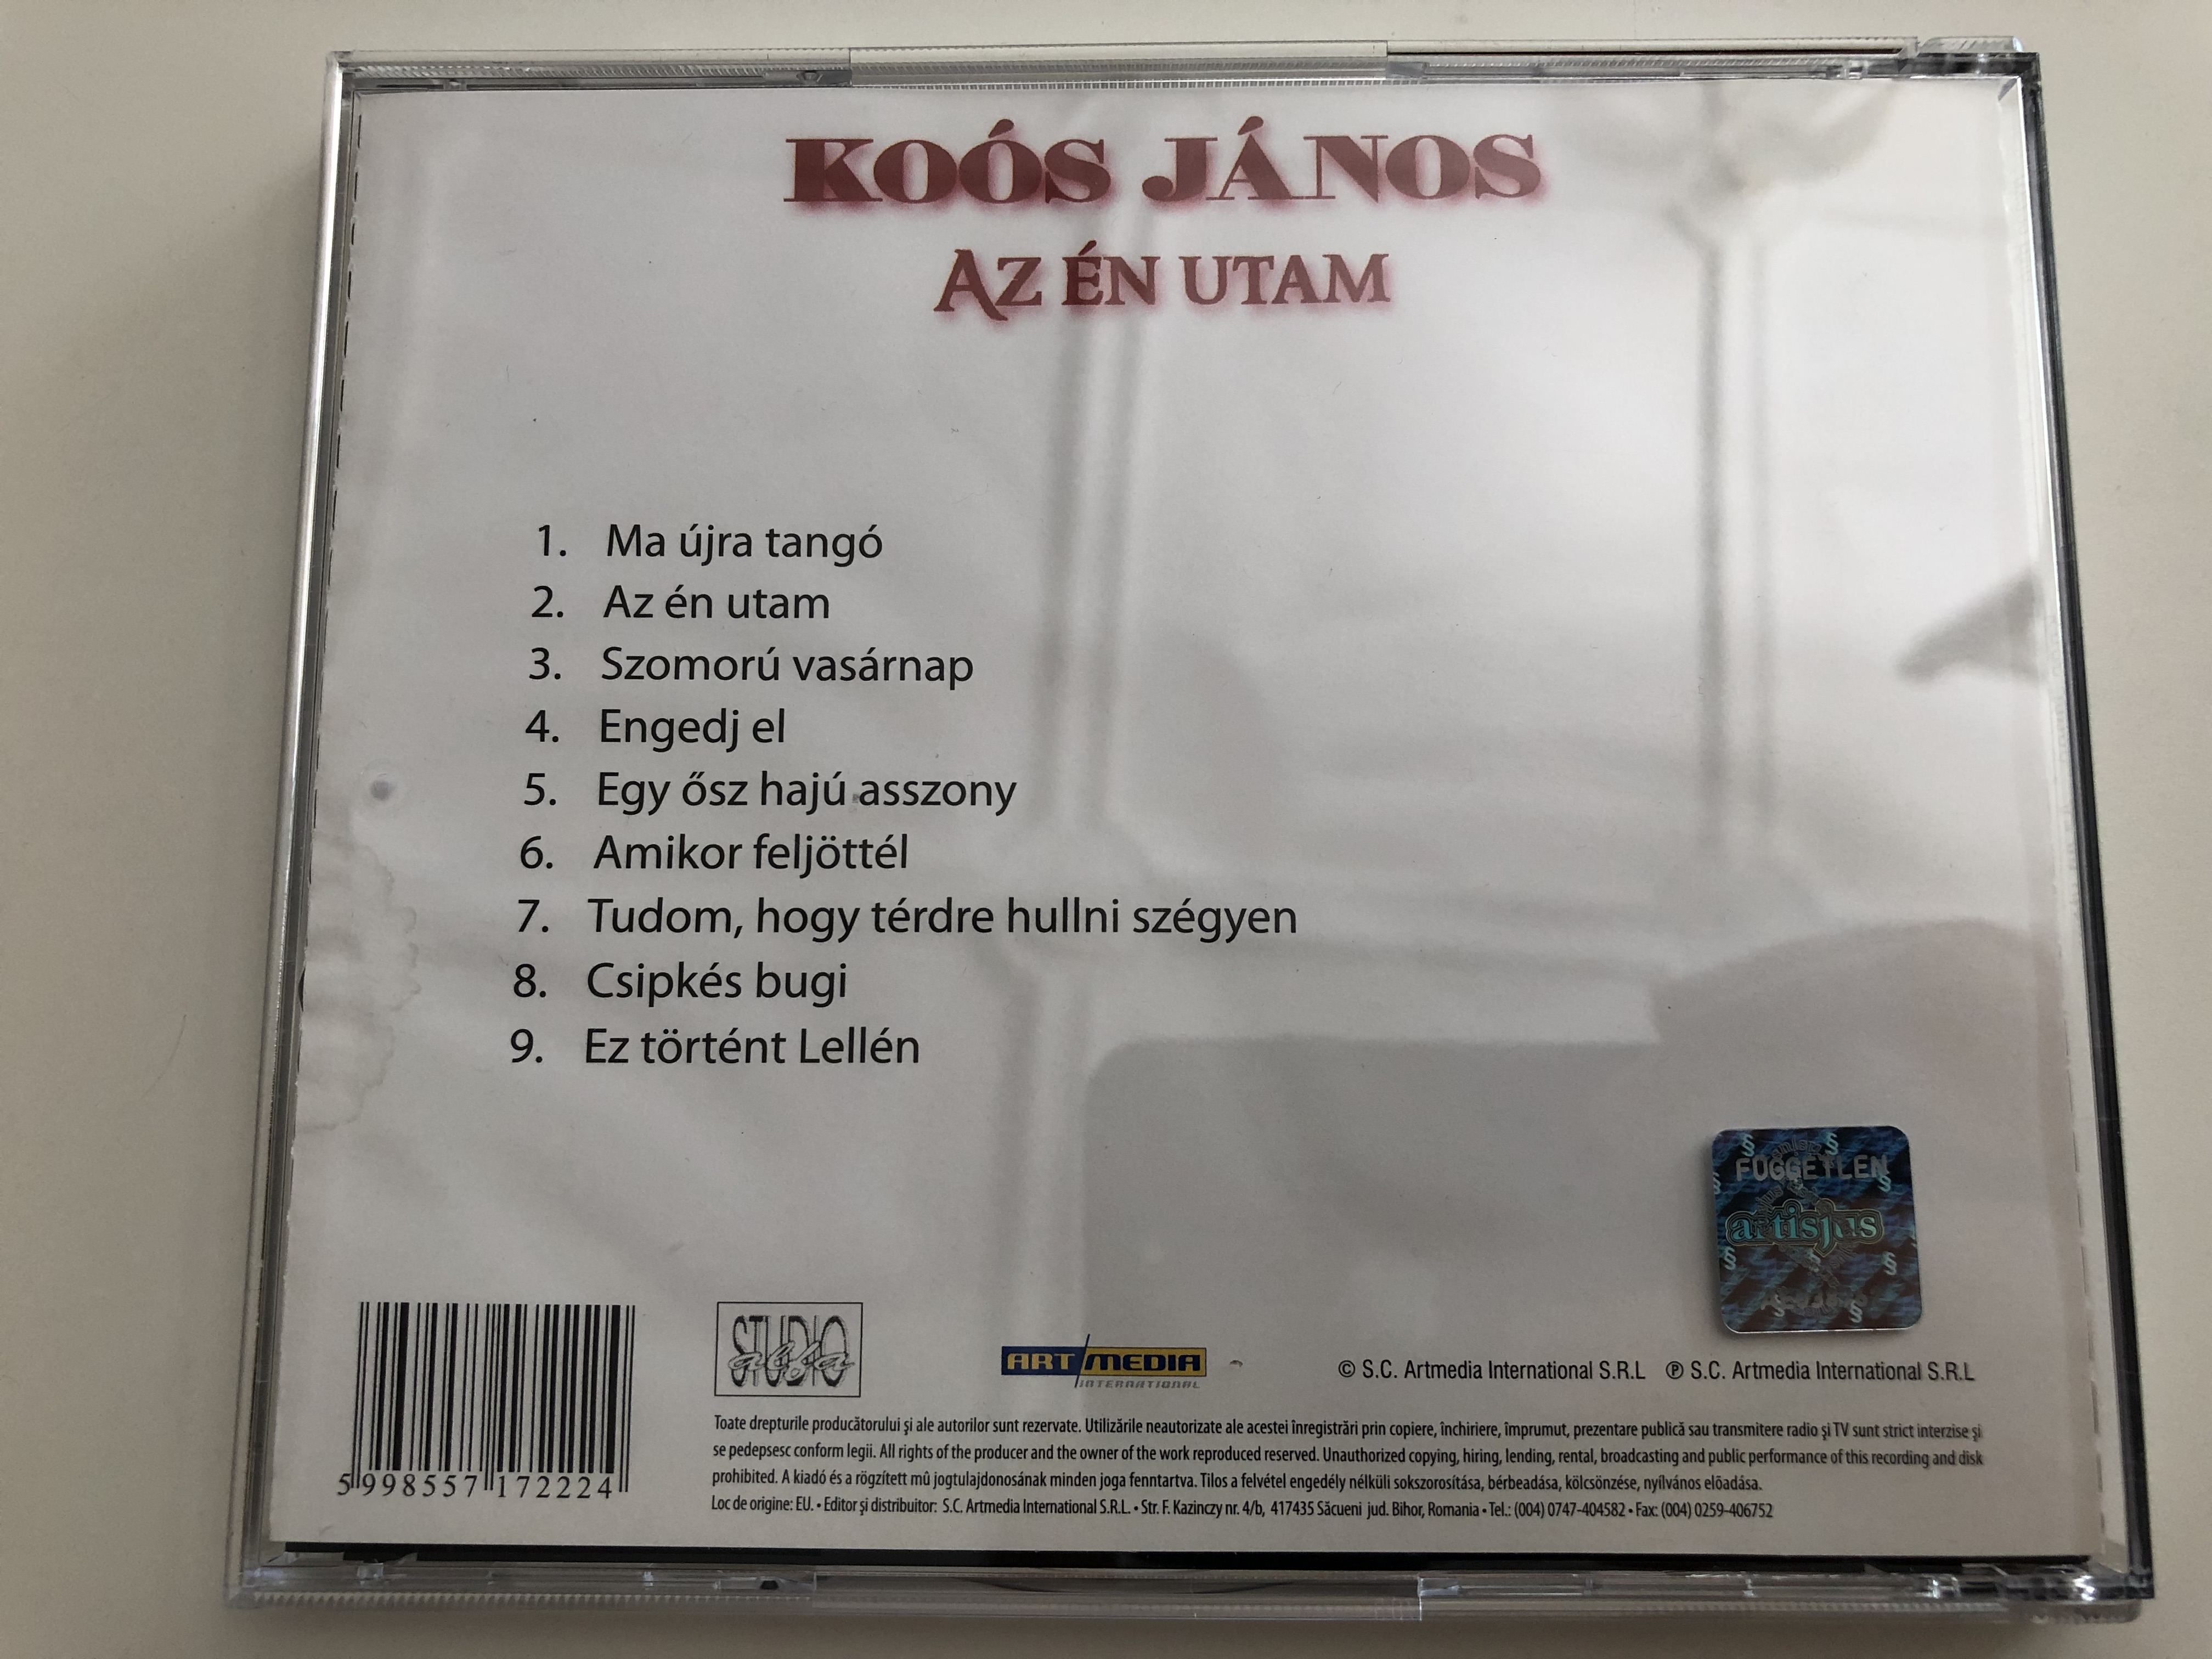 ko-s-j-nos-az-n-utam-audio-cd-07222-rnr-5-.jpg